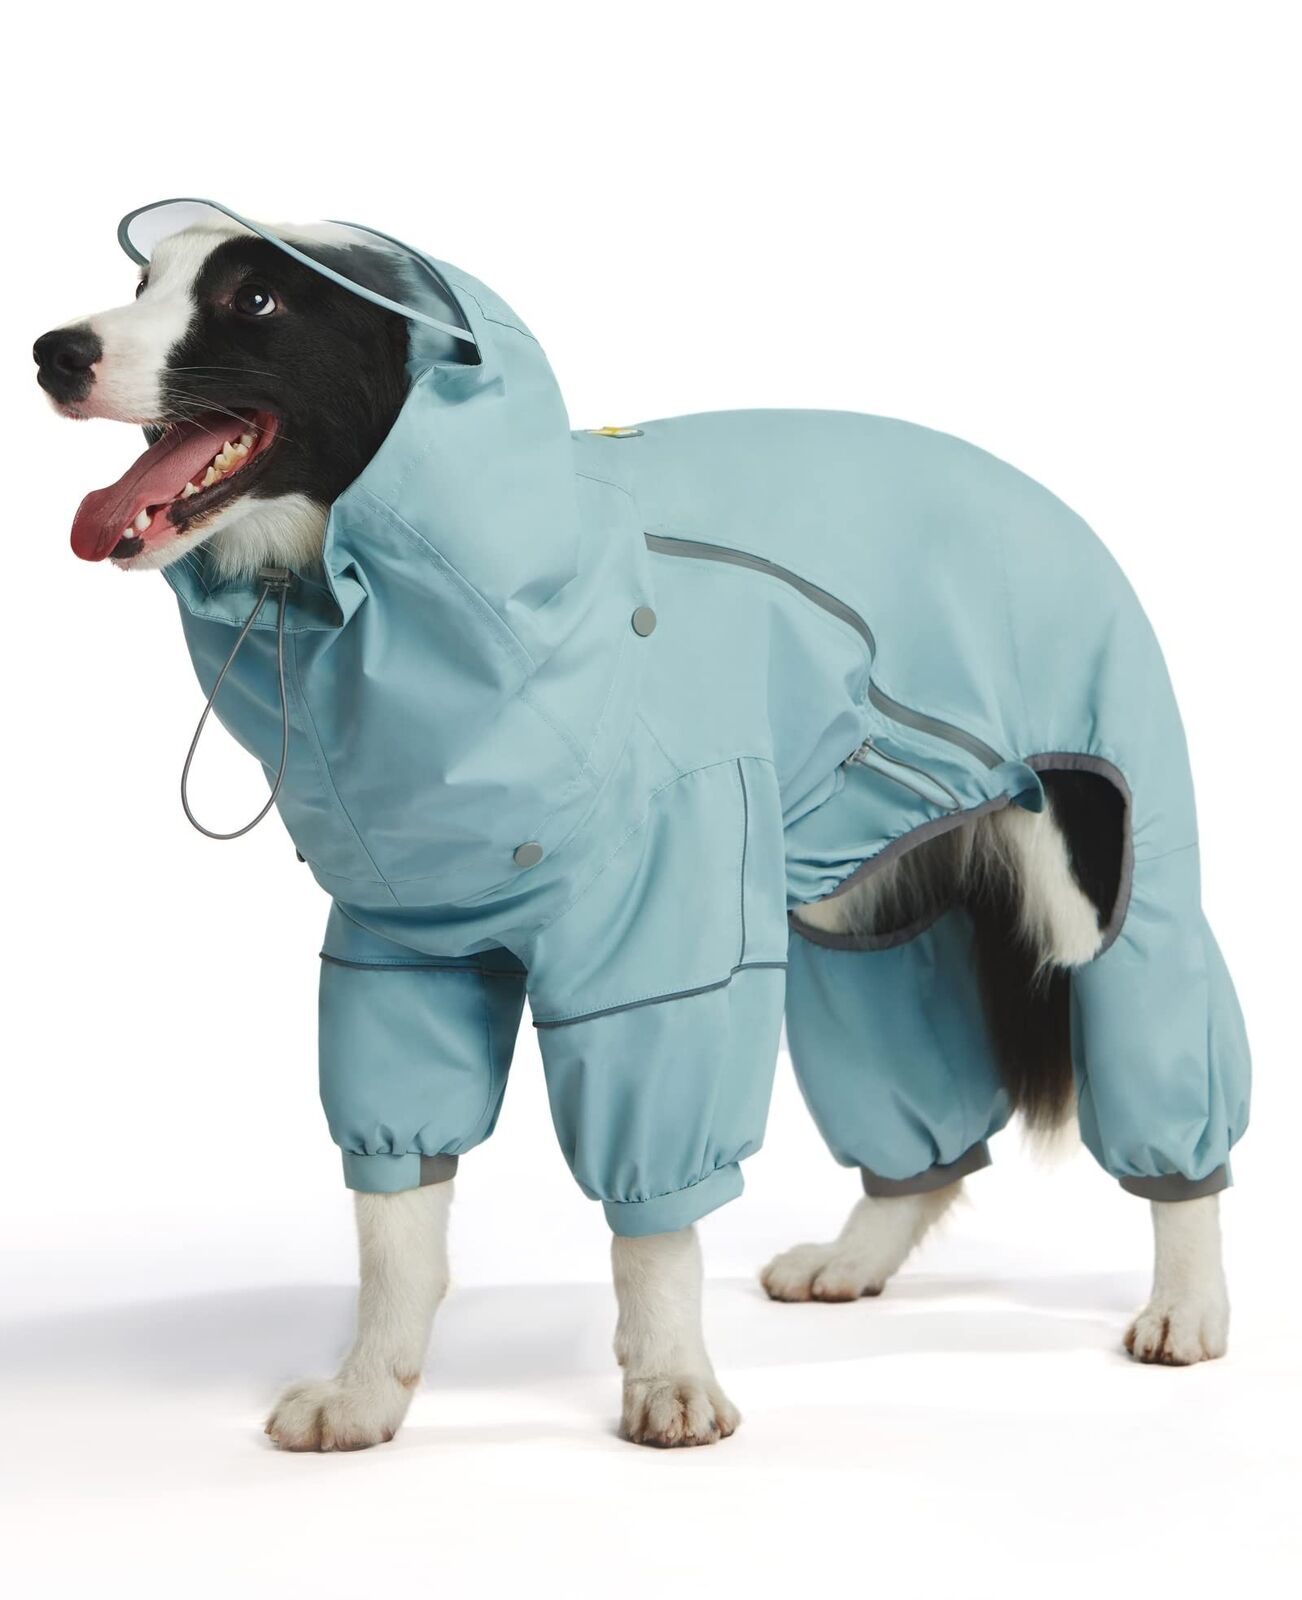 WOOFO Dog Raincoat, Extra Waterproof Dog Rain Jacket for Wet Weather|Full Wra...